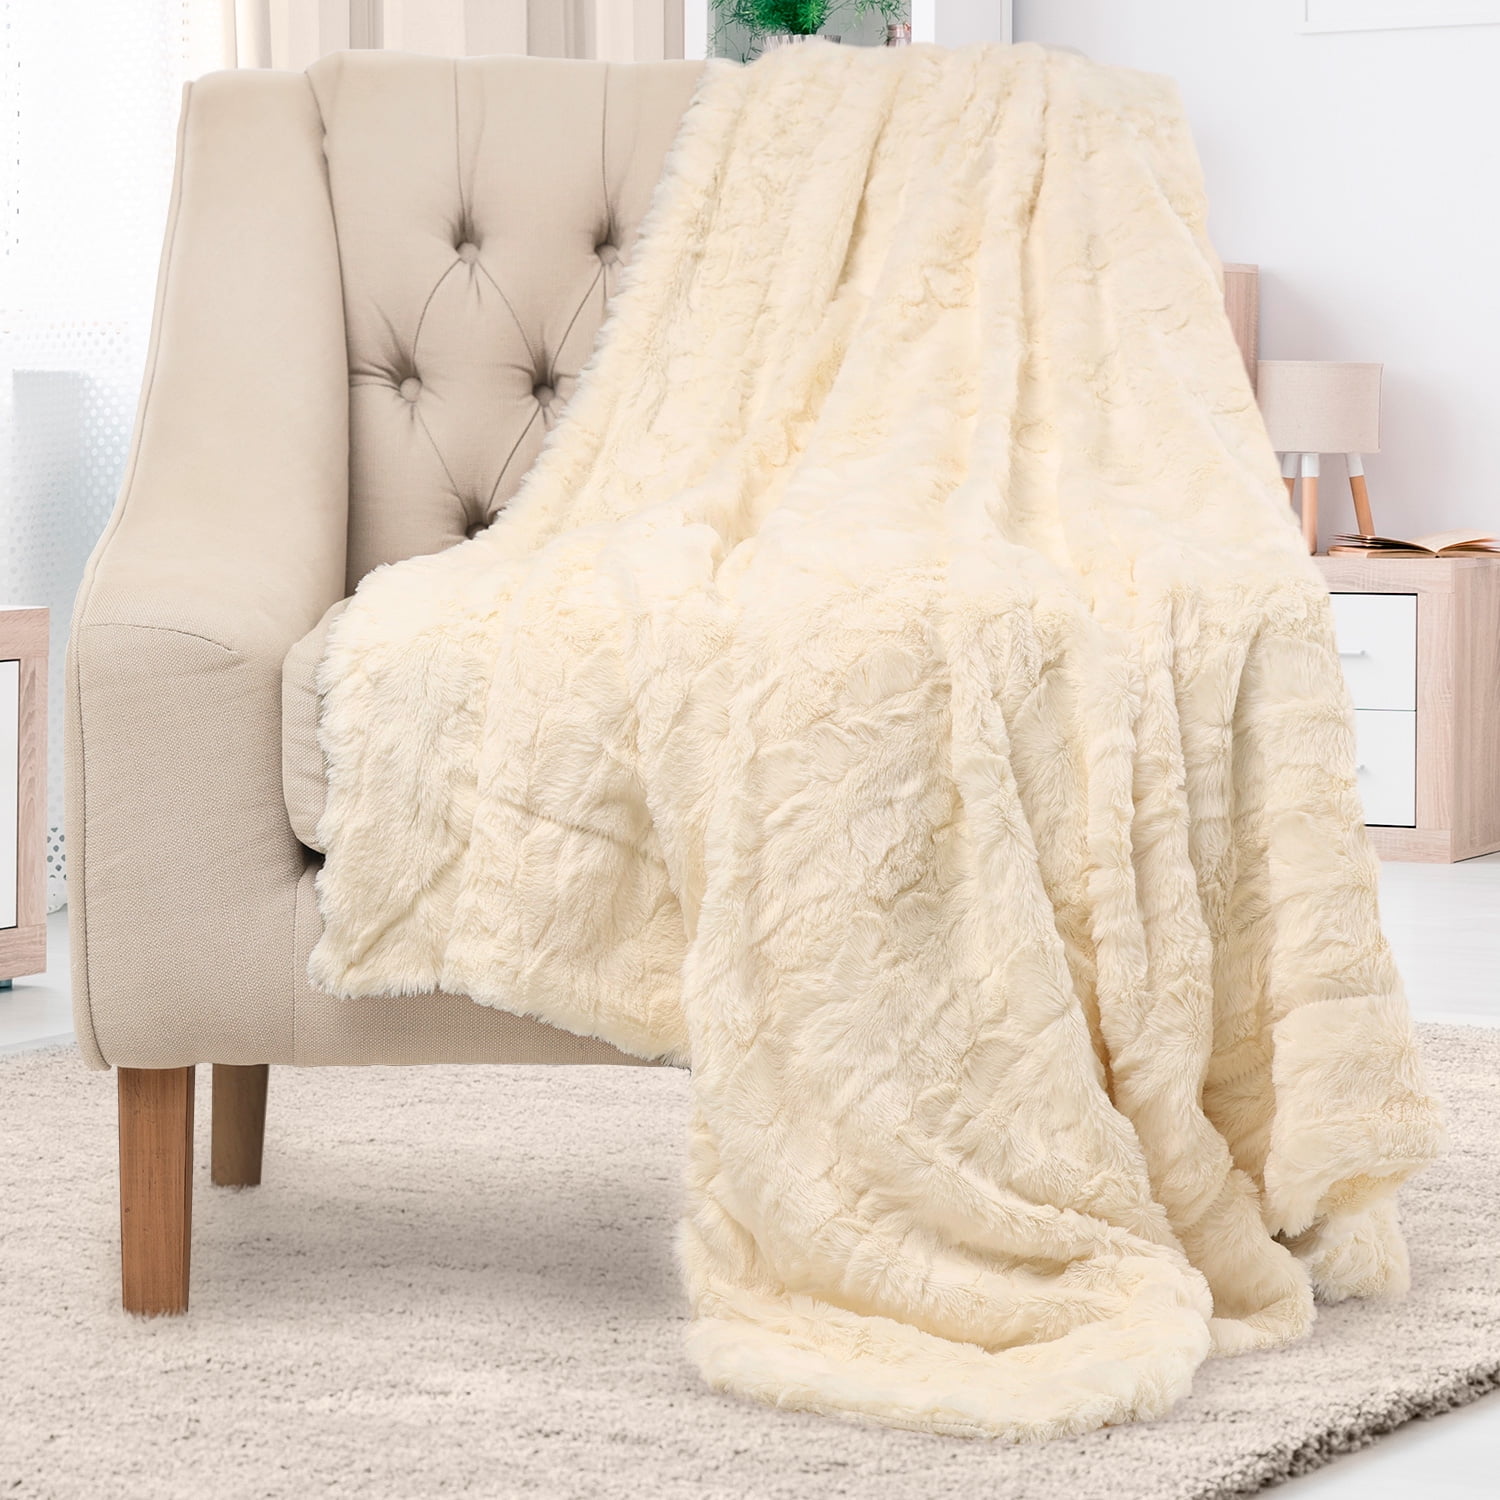 POPCORN THROW Fleece Blanket Faux Fur Waffle Throws Sofa Bed Settee Warm Cozy 